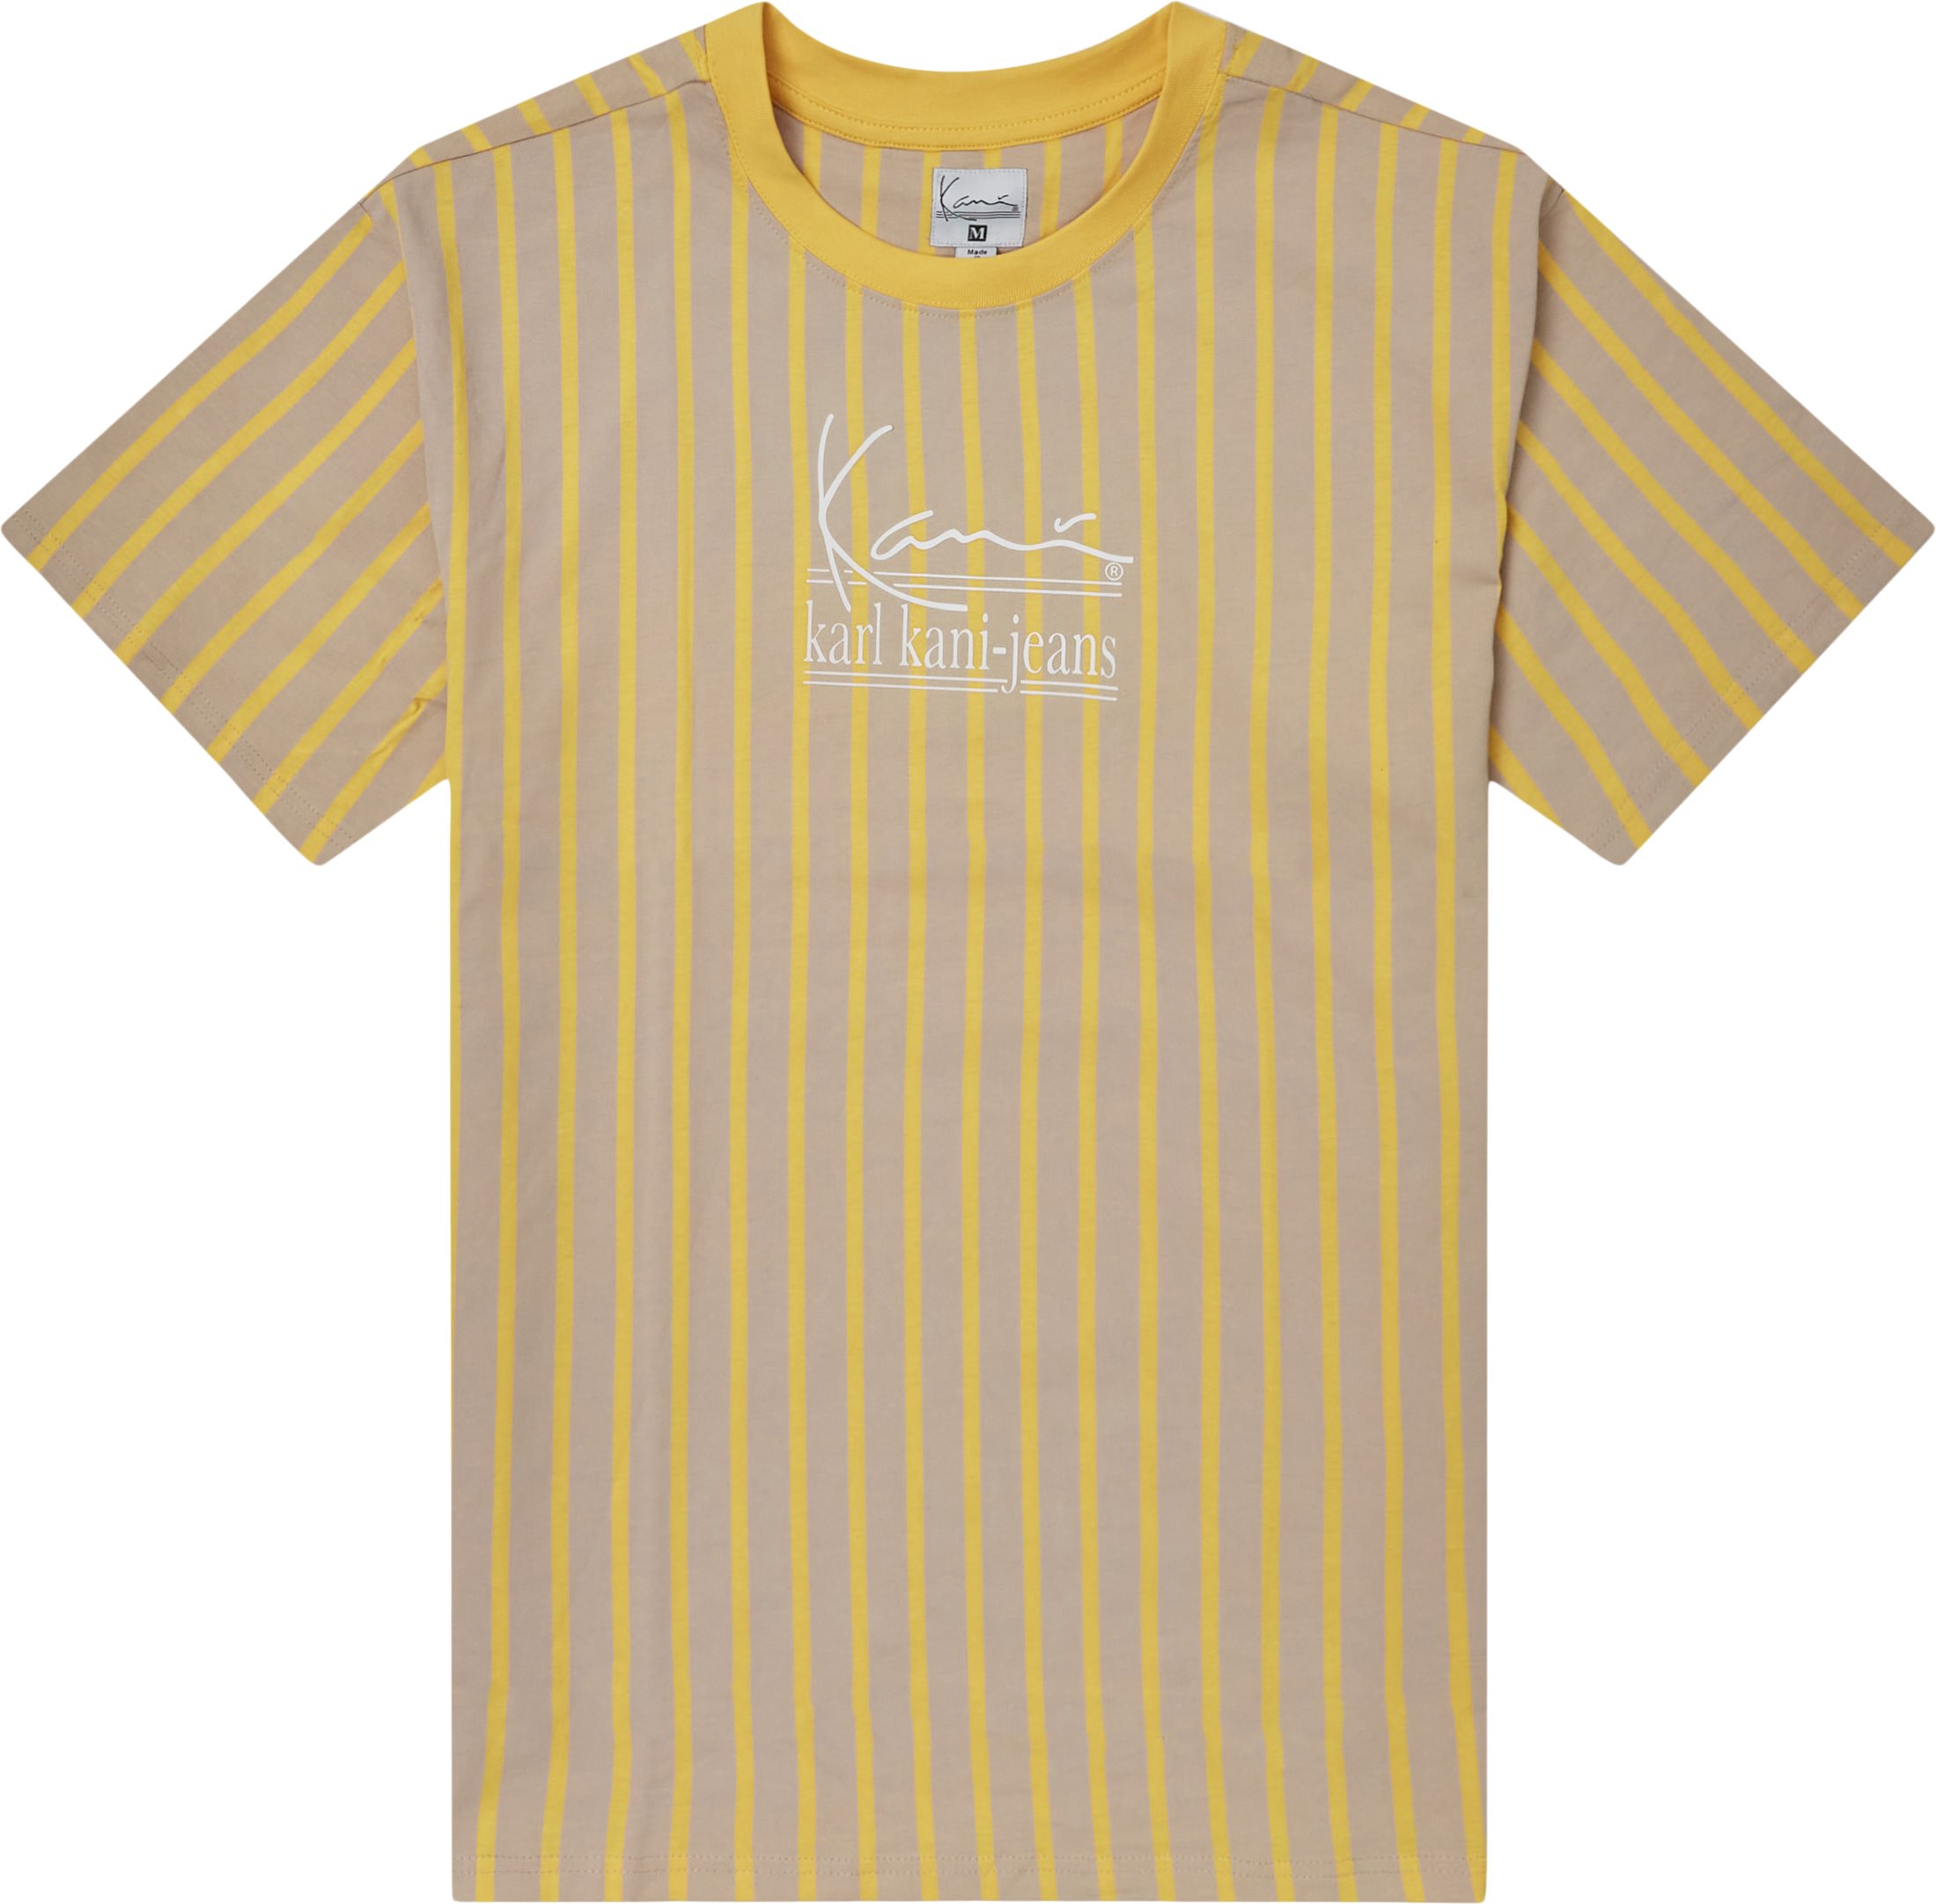 Signature Kkj Pinstripe Tee - T-shirts - Regular fit - Sand